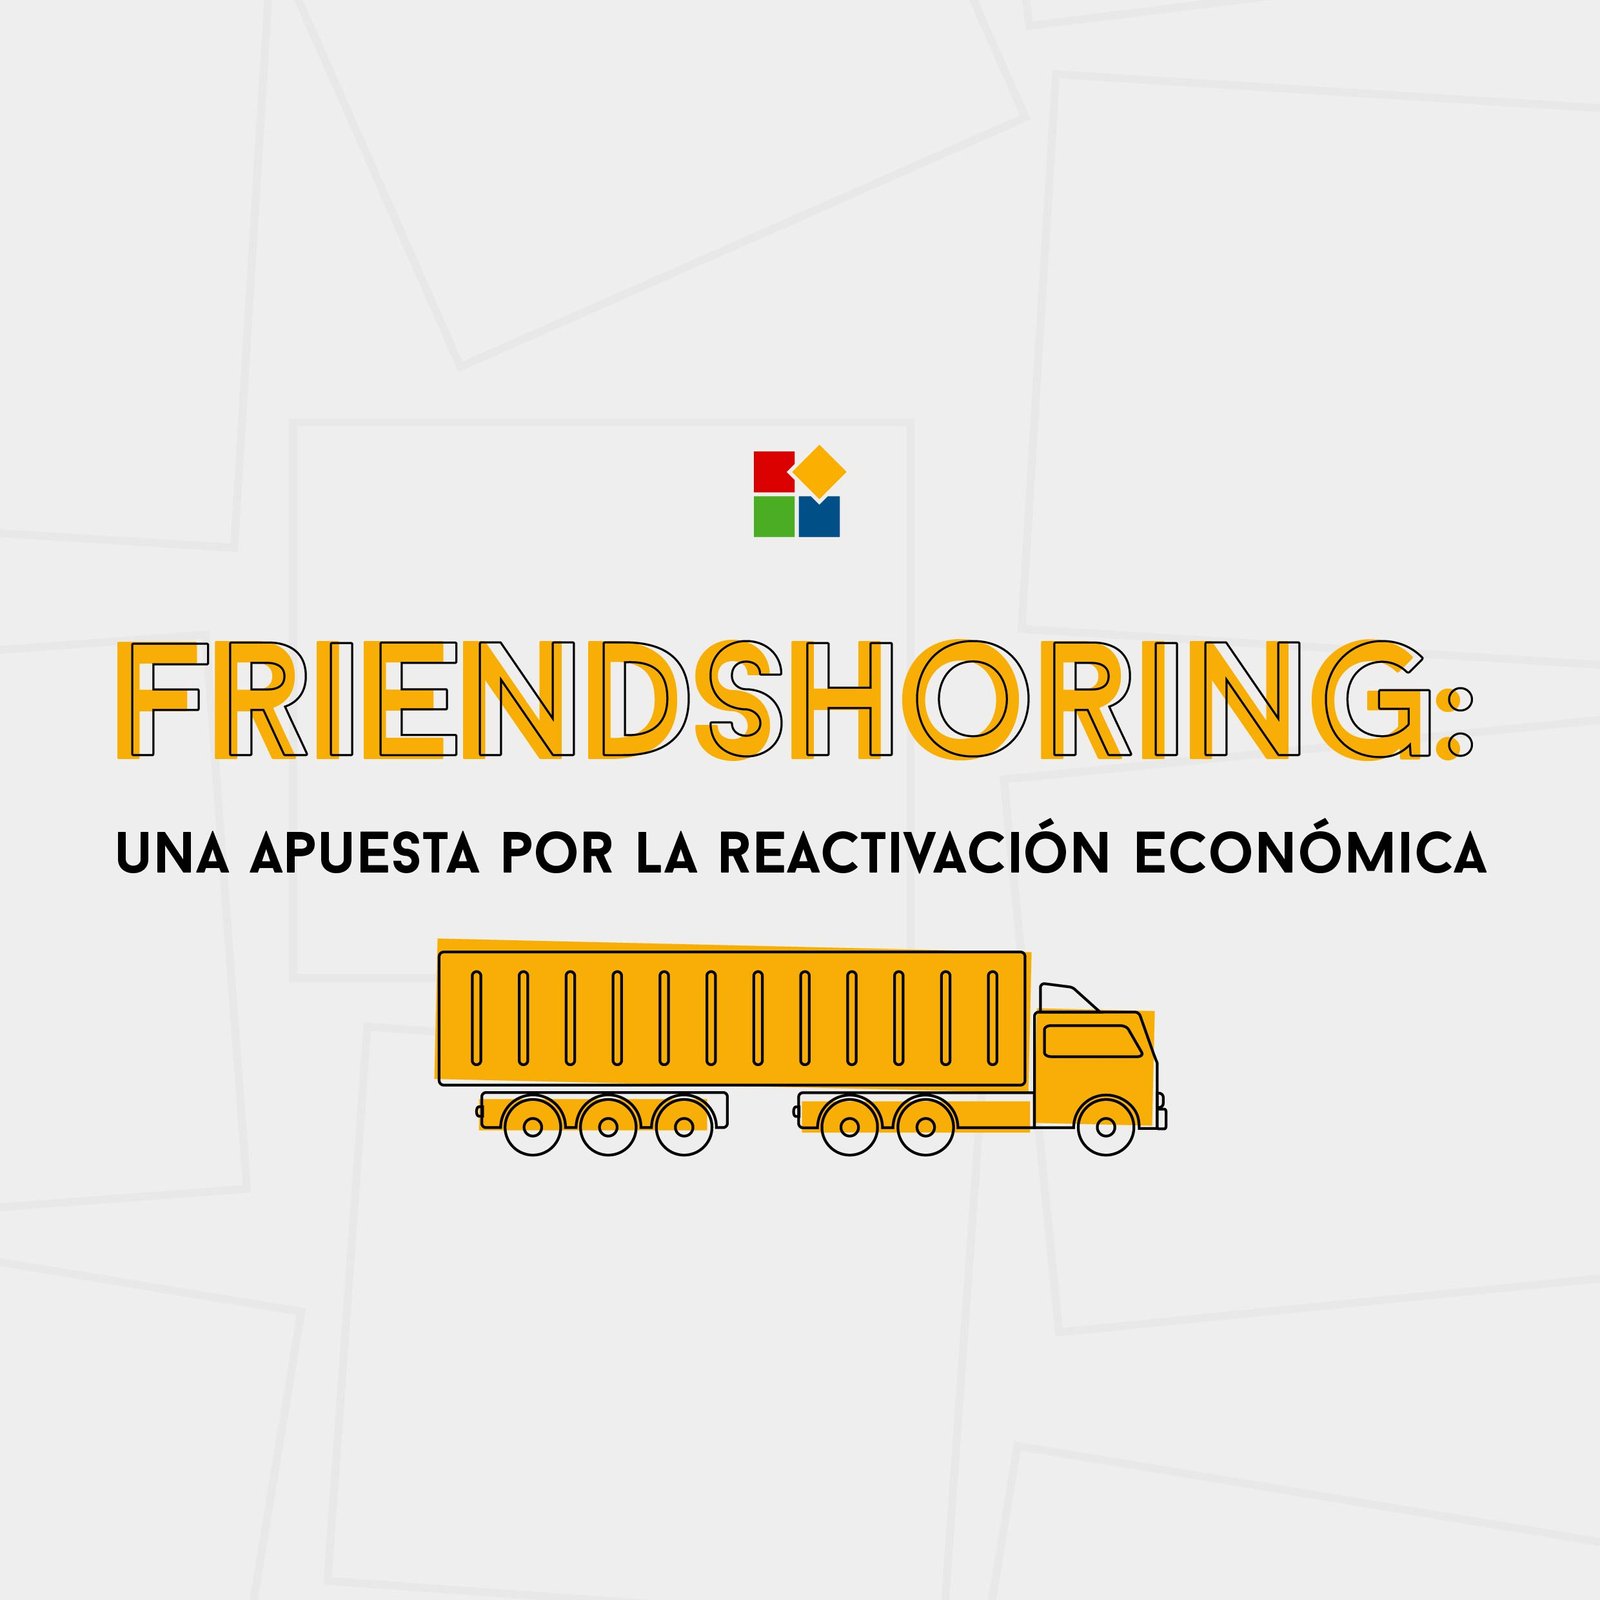 Friendshoring: Una apuesta por la reactivación económica